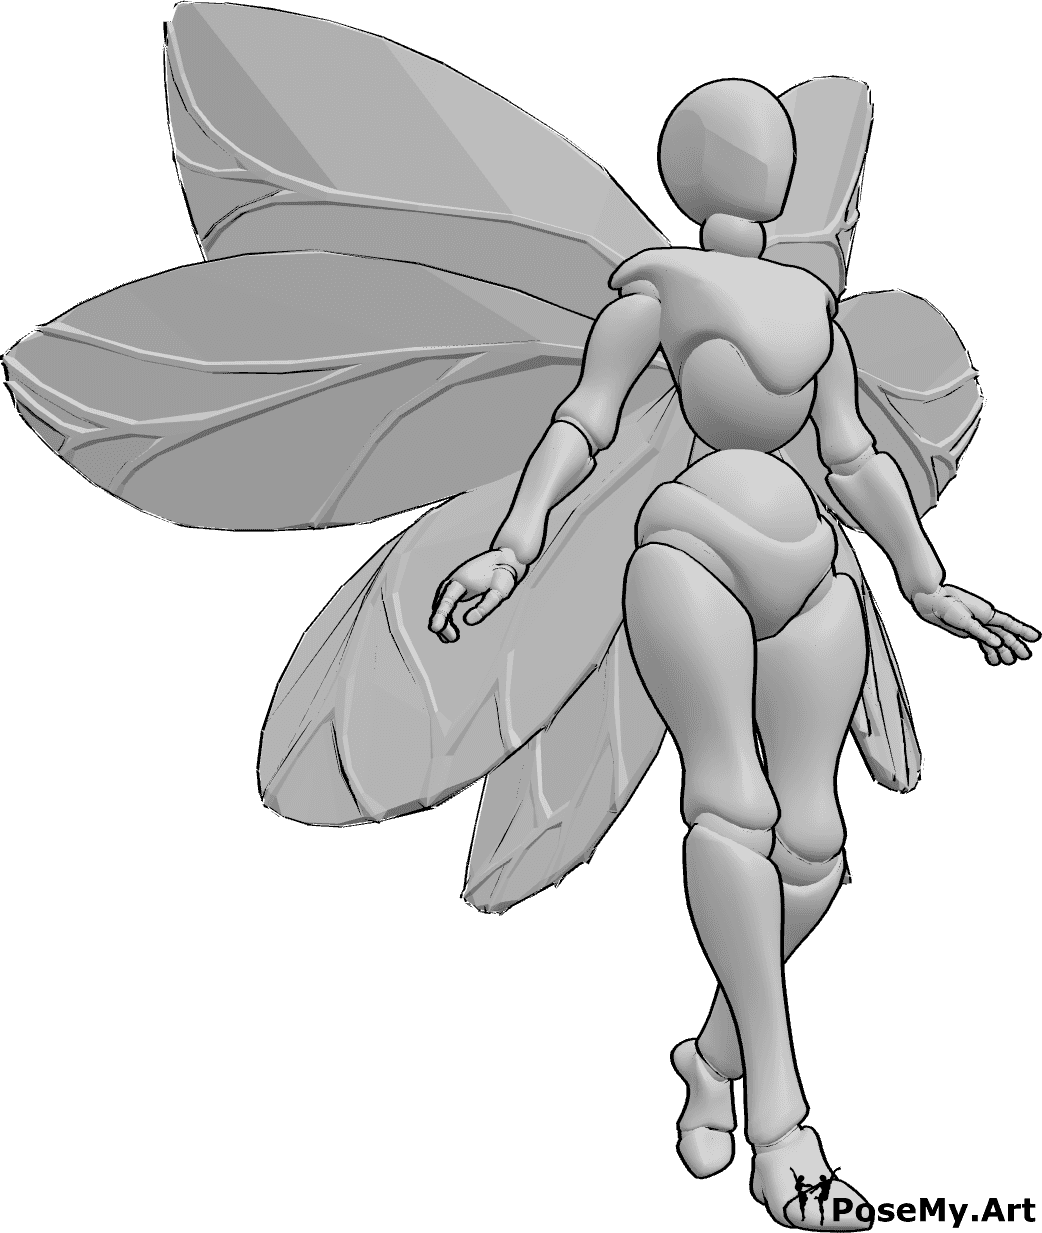 Référence des poses- Ailes de fées, pose de marche - Femme avec des ailes de fée marchant, regardant vers l'avant, référence de dessin d'ailes humaines